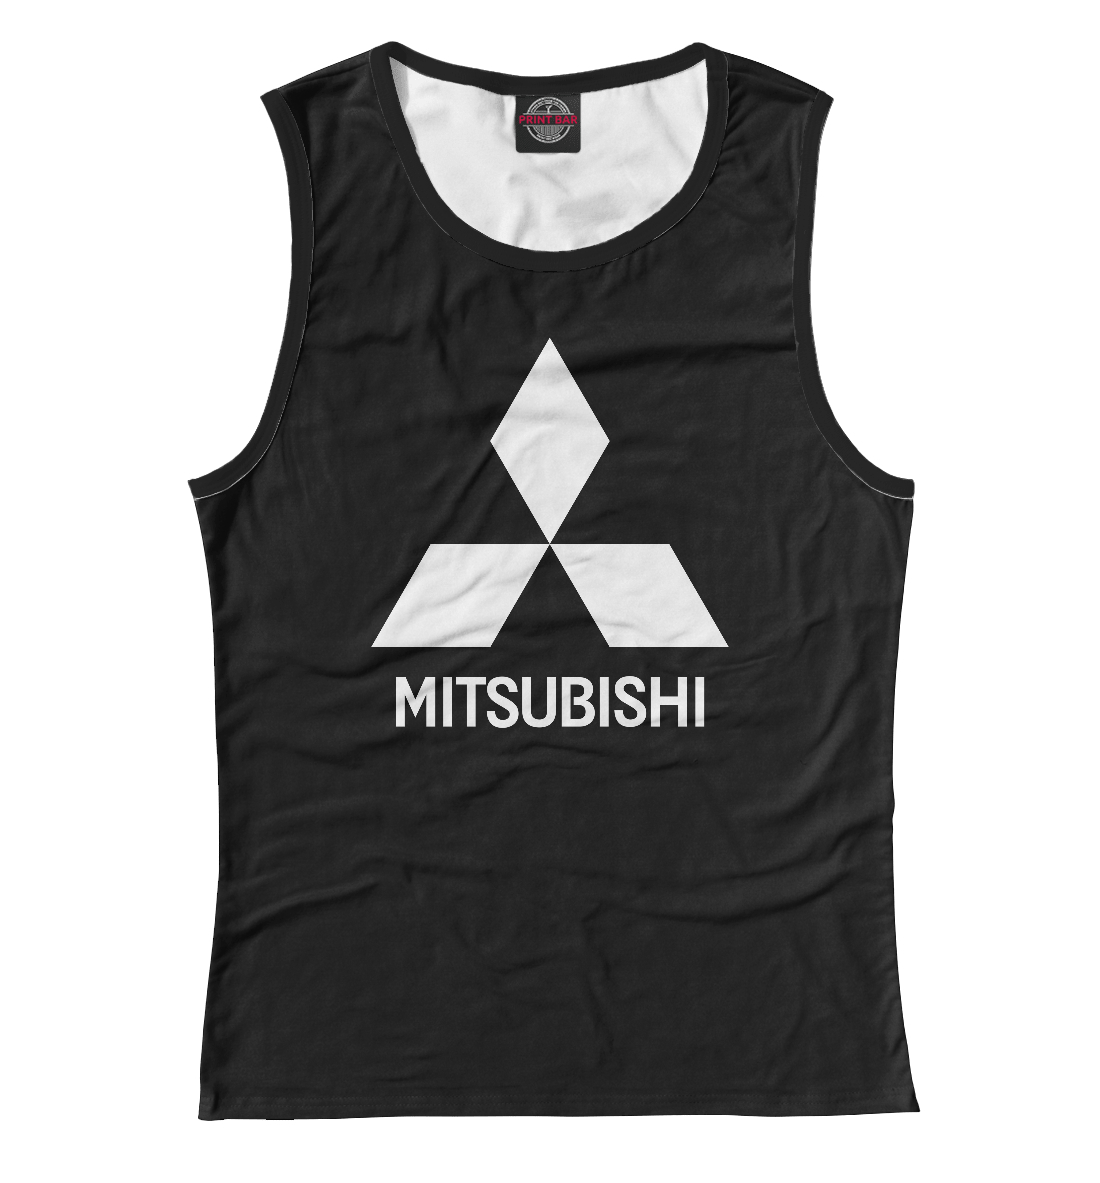 

Mitsubishi